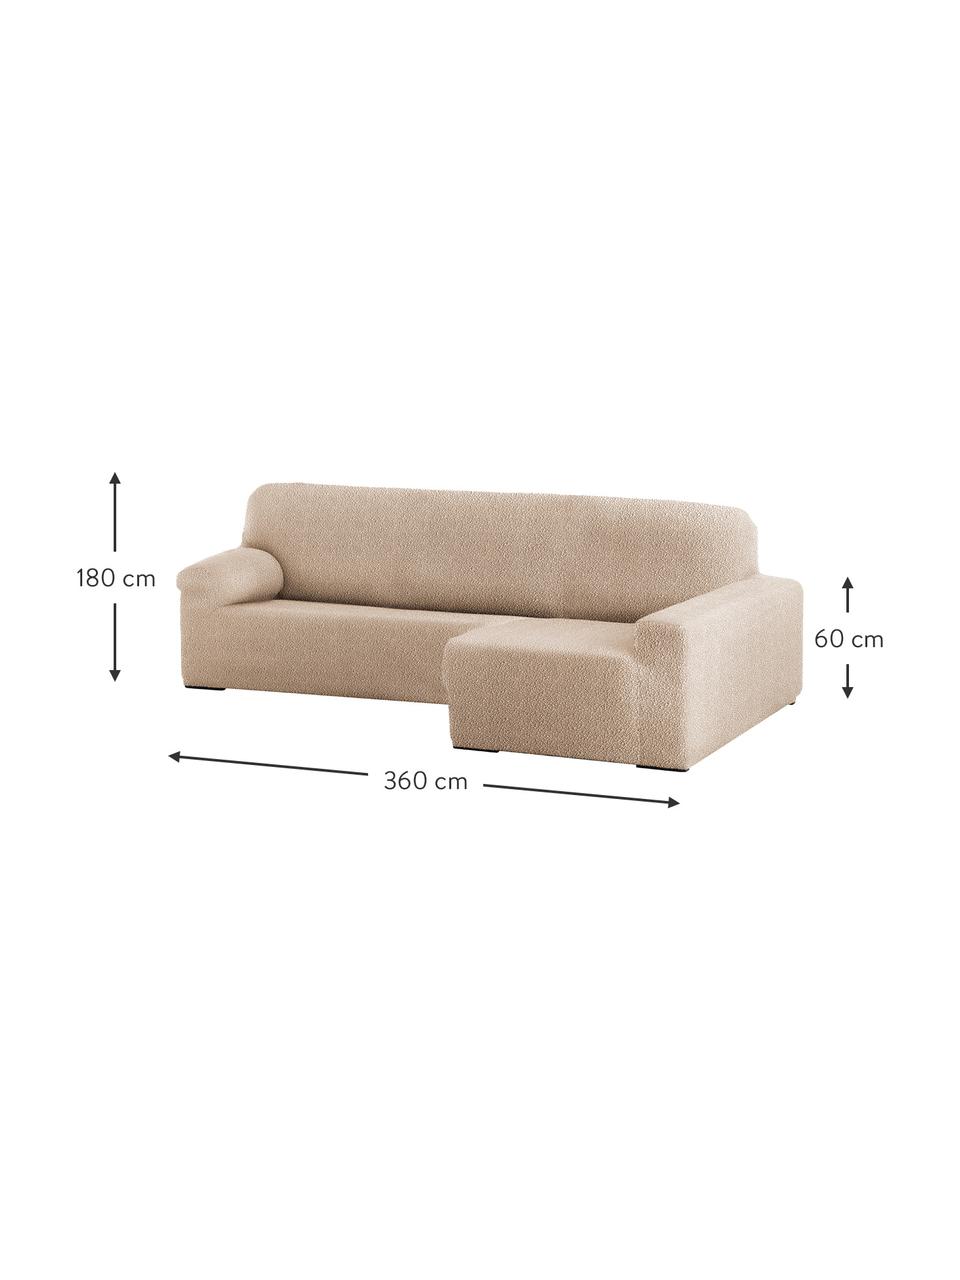 Housse de canapé Roc, 55 % polyester, 35 % coton, 10 % élastomère, Beige, larg. 360 x prof. 180 cm, méridienne à droite